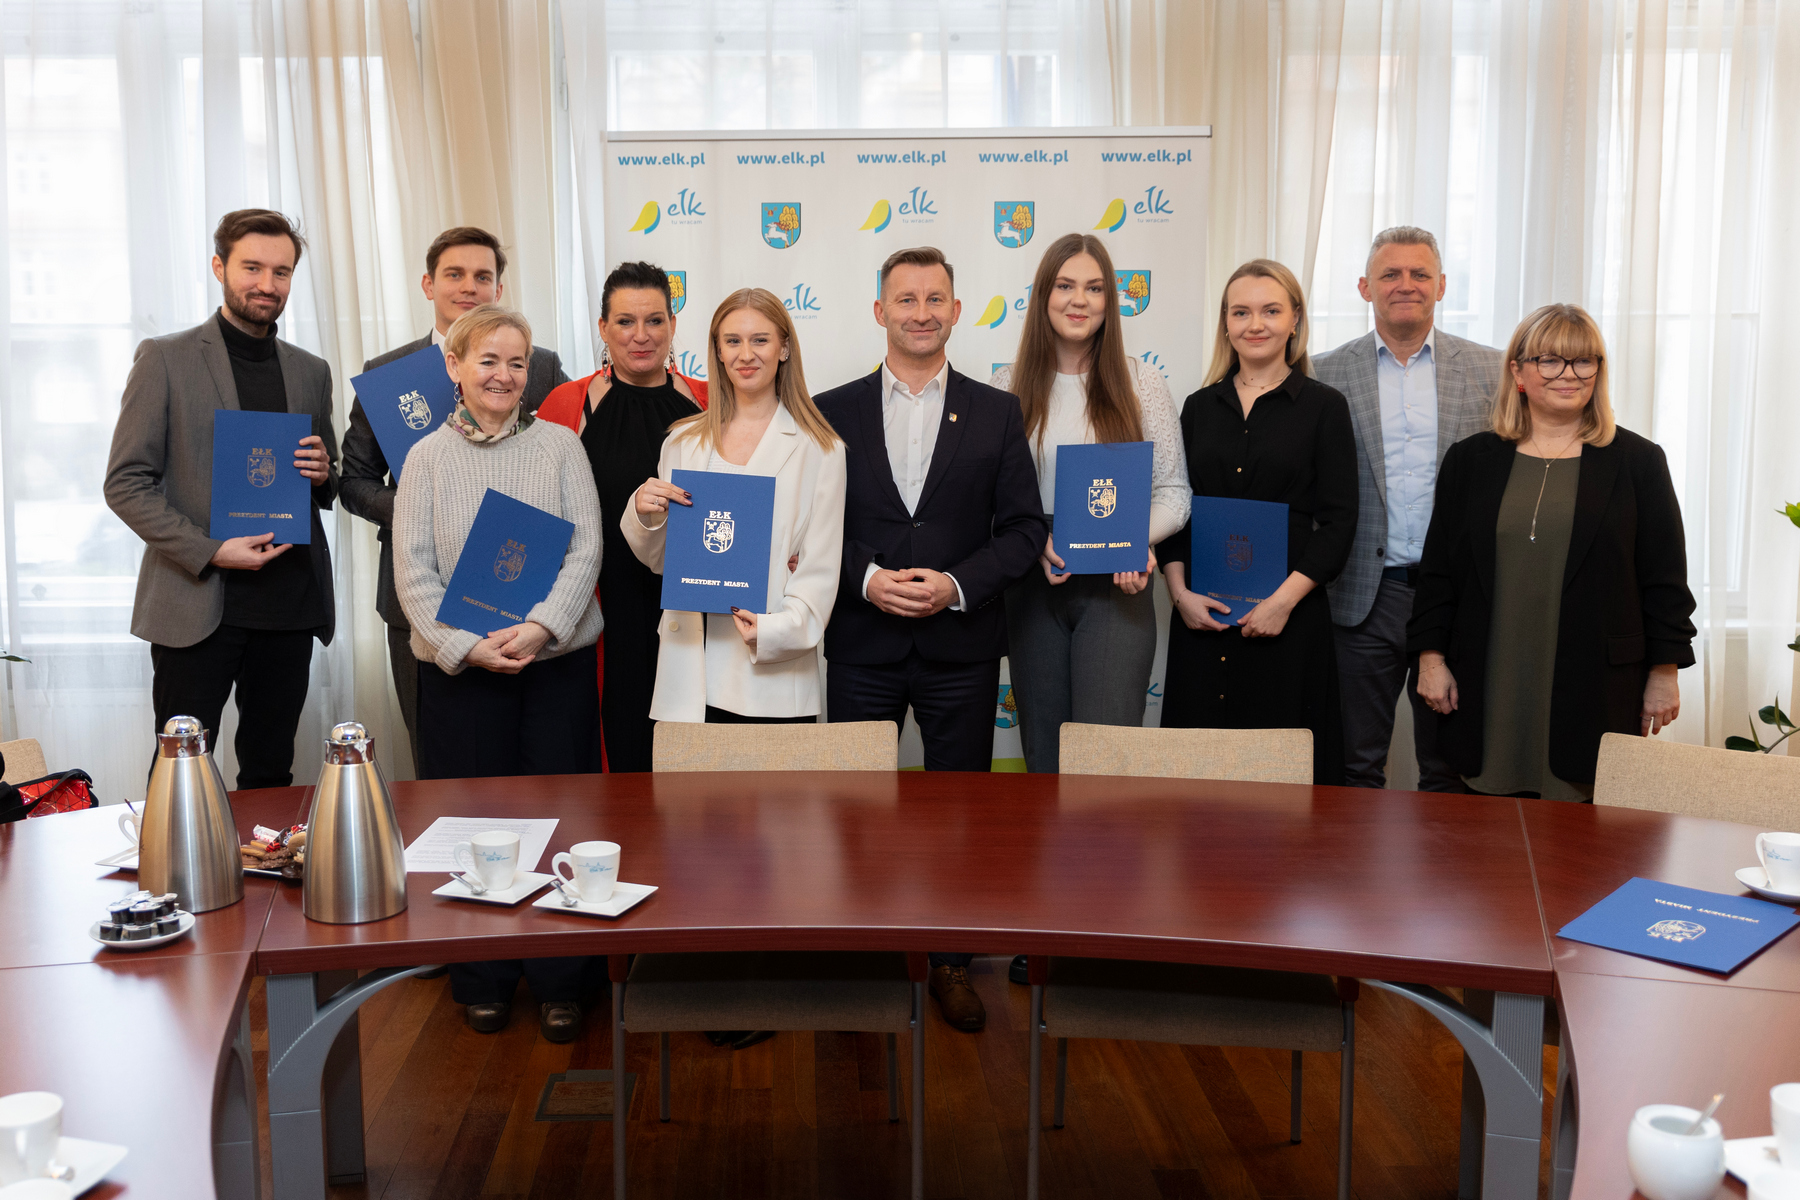 Gli artisti di Ełk hanno ricevuto borse di studio dal Presidente